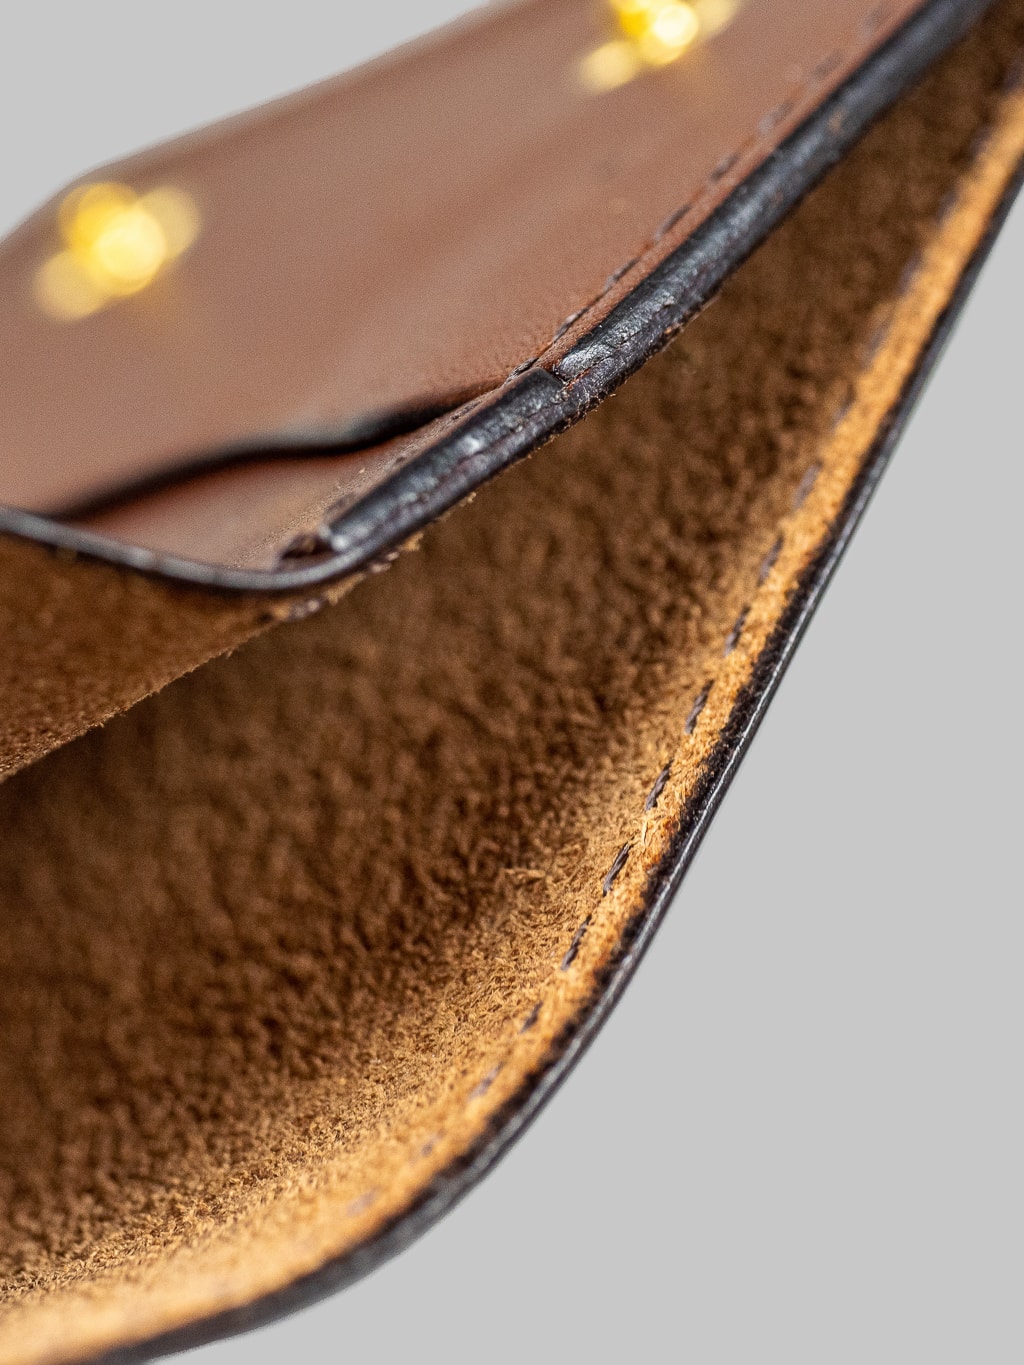 Studio Dartisan brown leather mini wallet interior texture